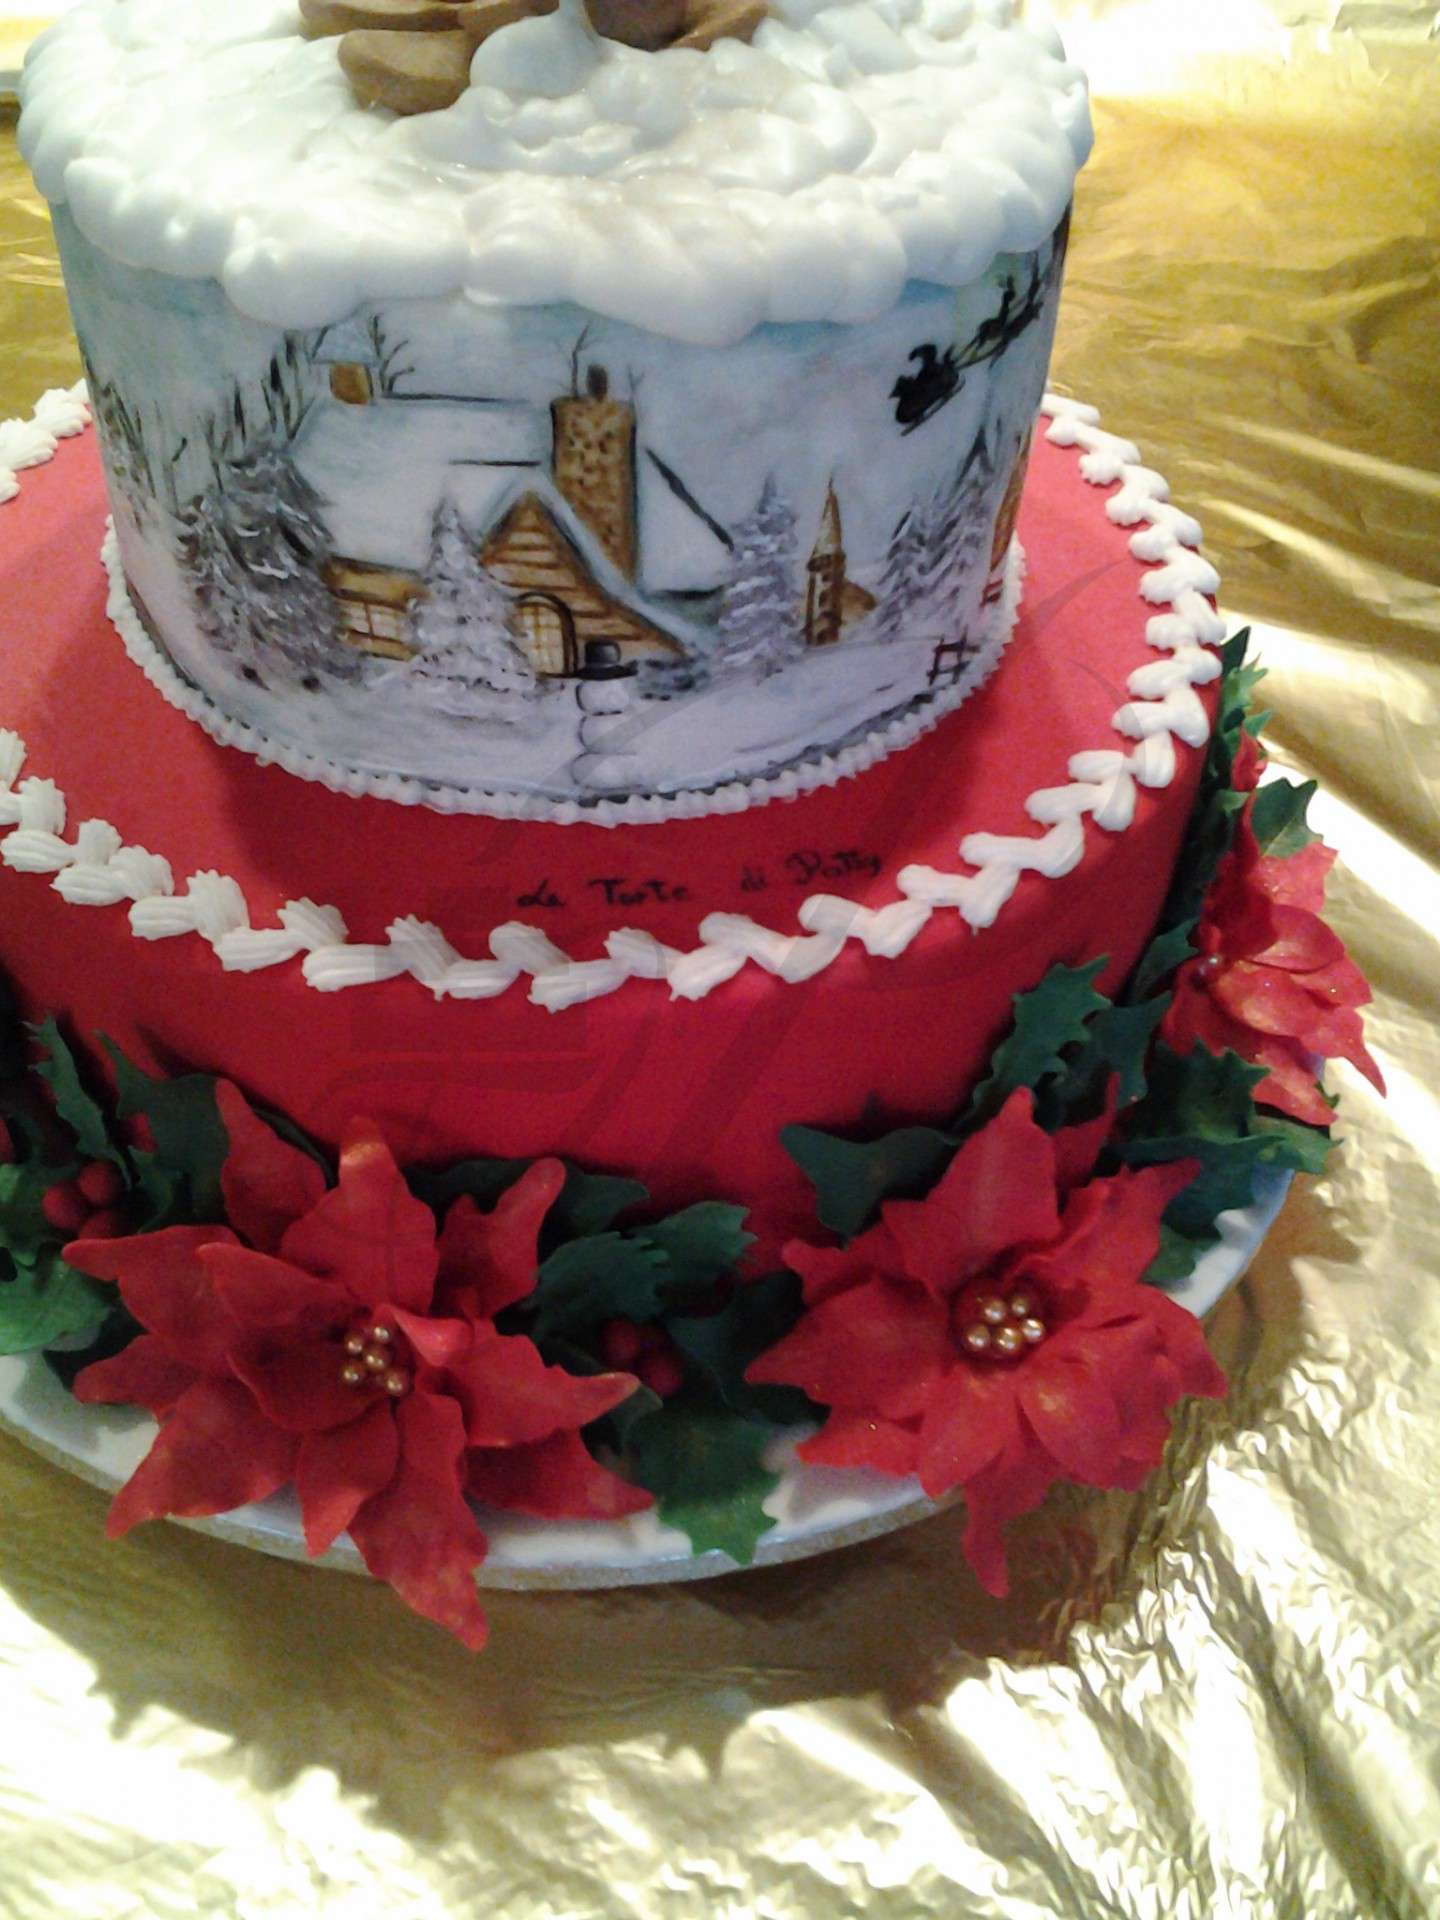 Stupenda torta natalizia decorata e dipinta